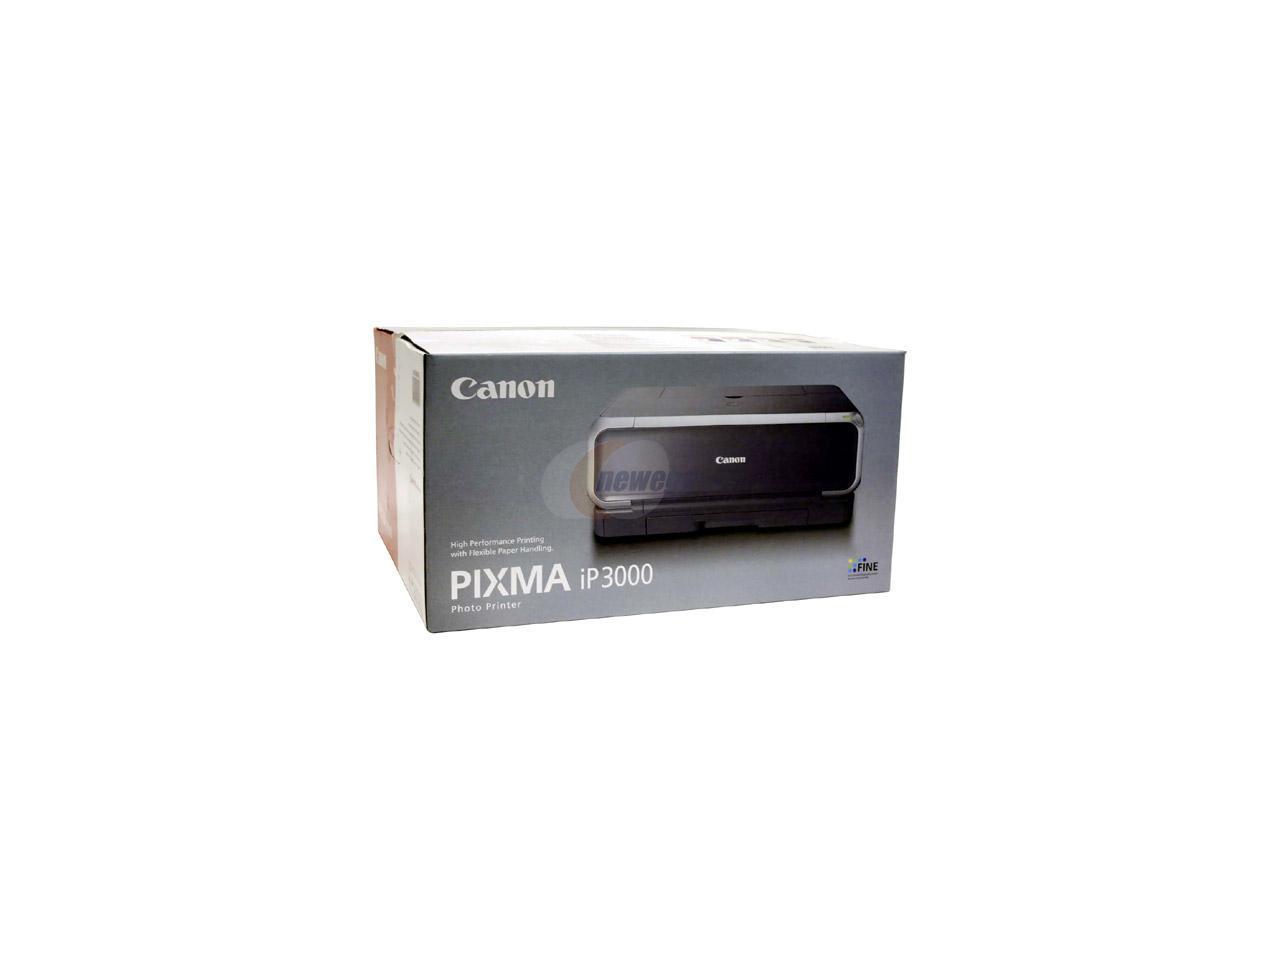 how to work canon pixma ip3000 photo printer